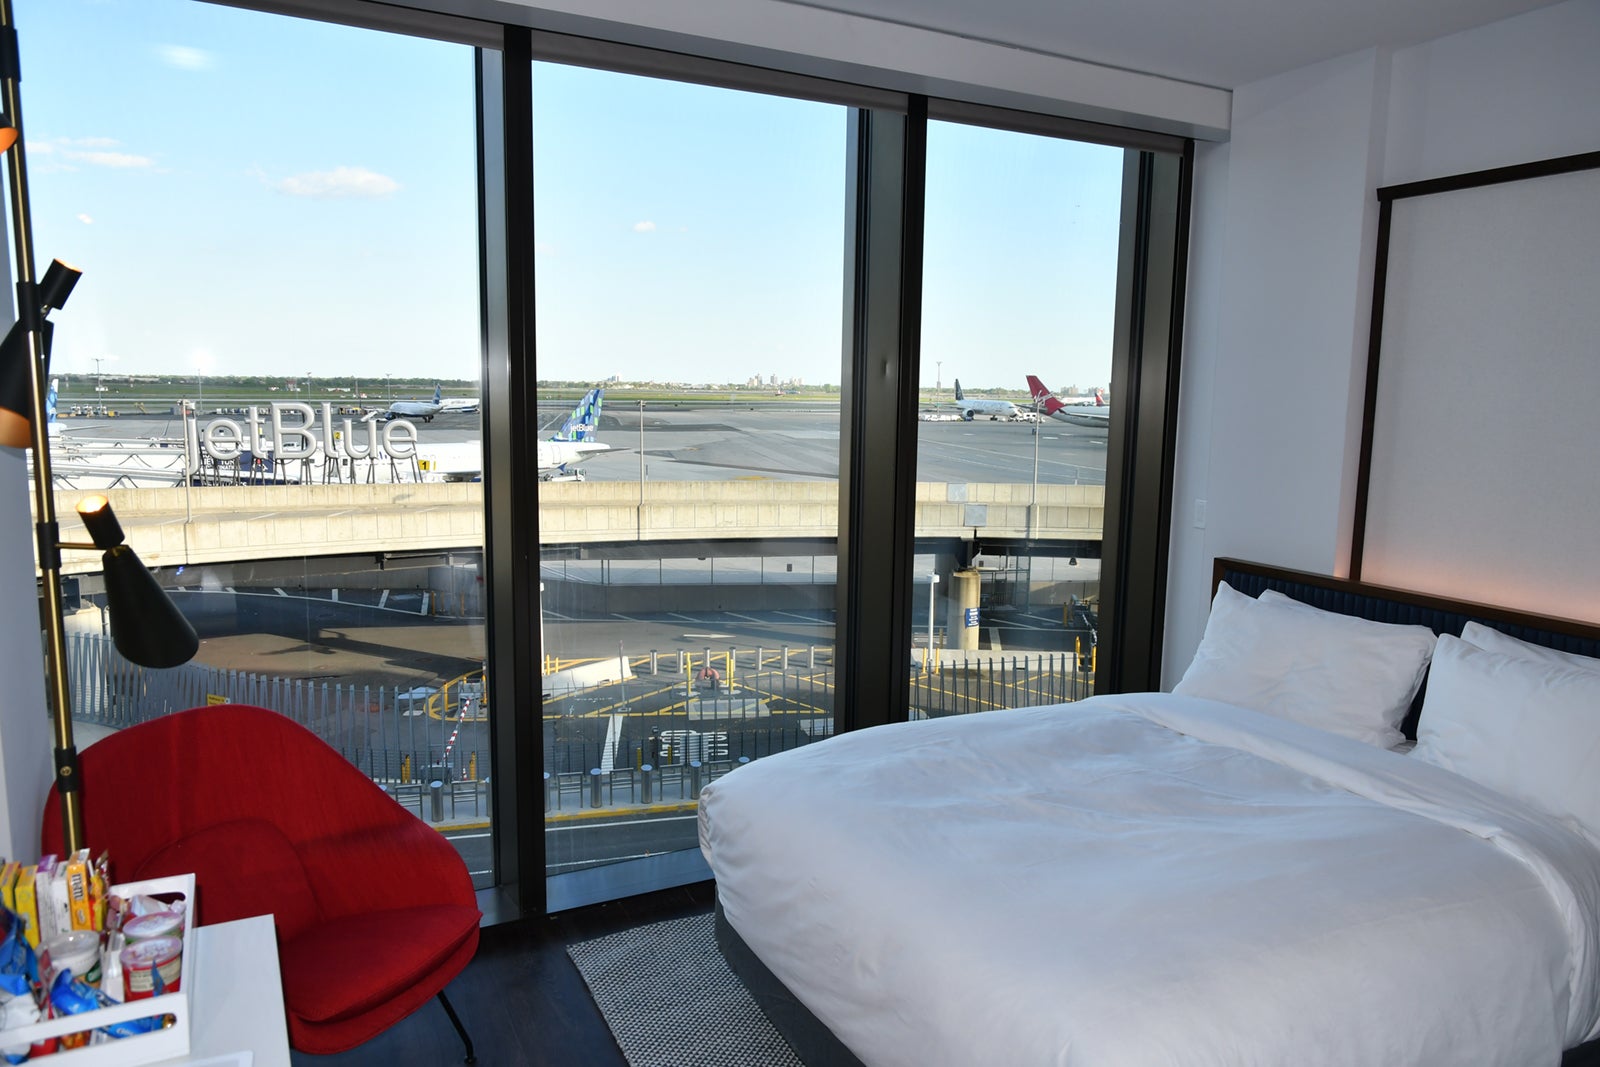 A runway-view room at the TWA Hotel at JFK airport